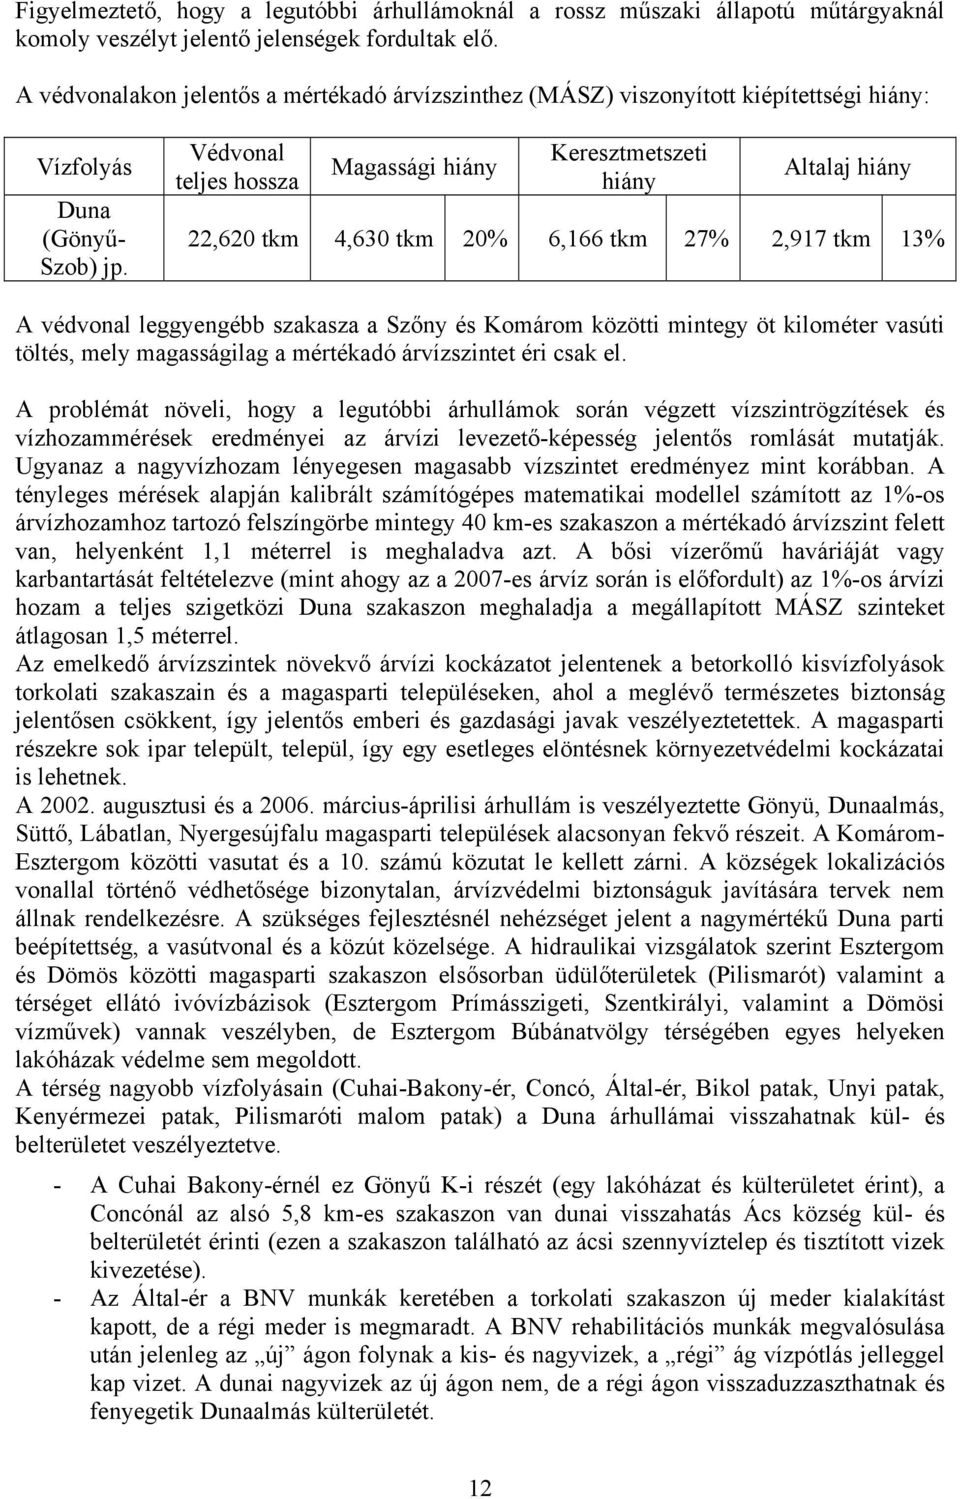 Védvonal teljes hossza Magassági hiány Keresztmetszeti hiány Altalaj hiány 22,620 tkm 4,630 tkm 20% 6,166 tkm 27% 2,917 tkm 13% A védvonal leggyengébb szakasza a Szőny és Komárom közötti mintegy öt